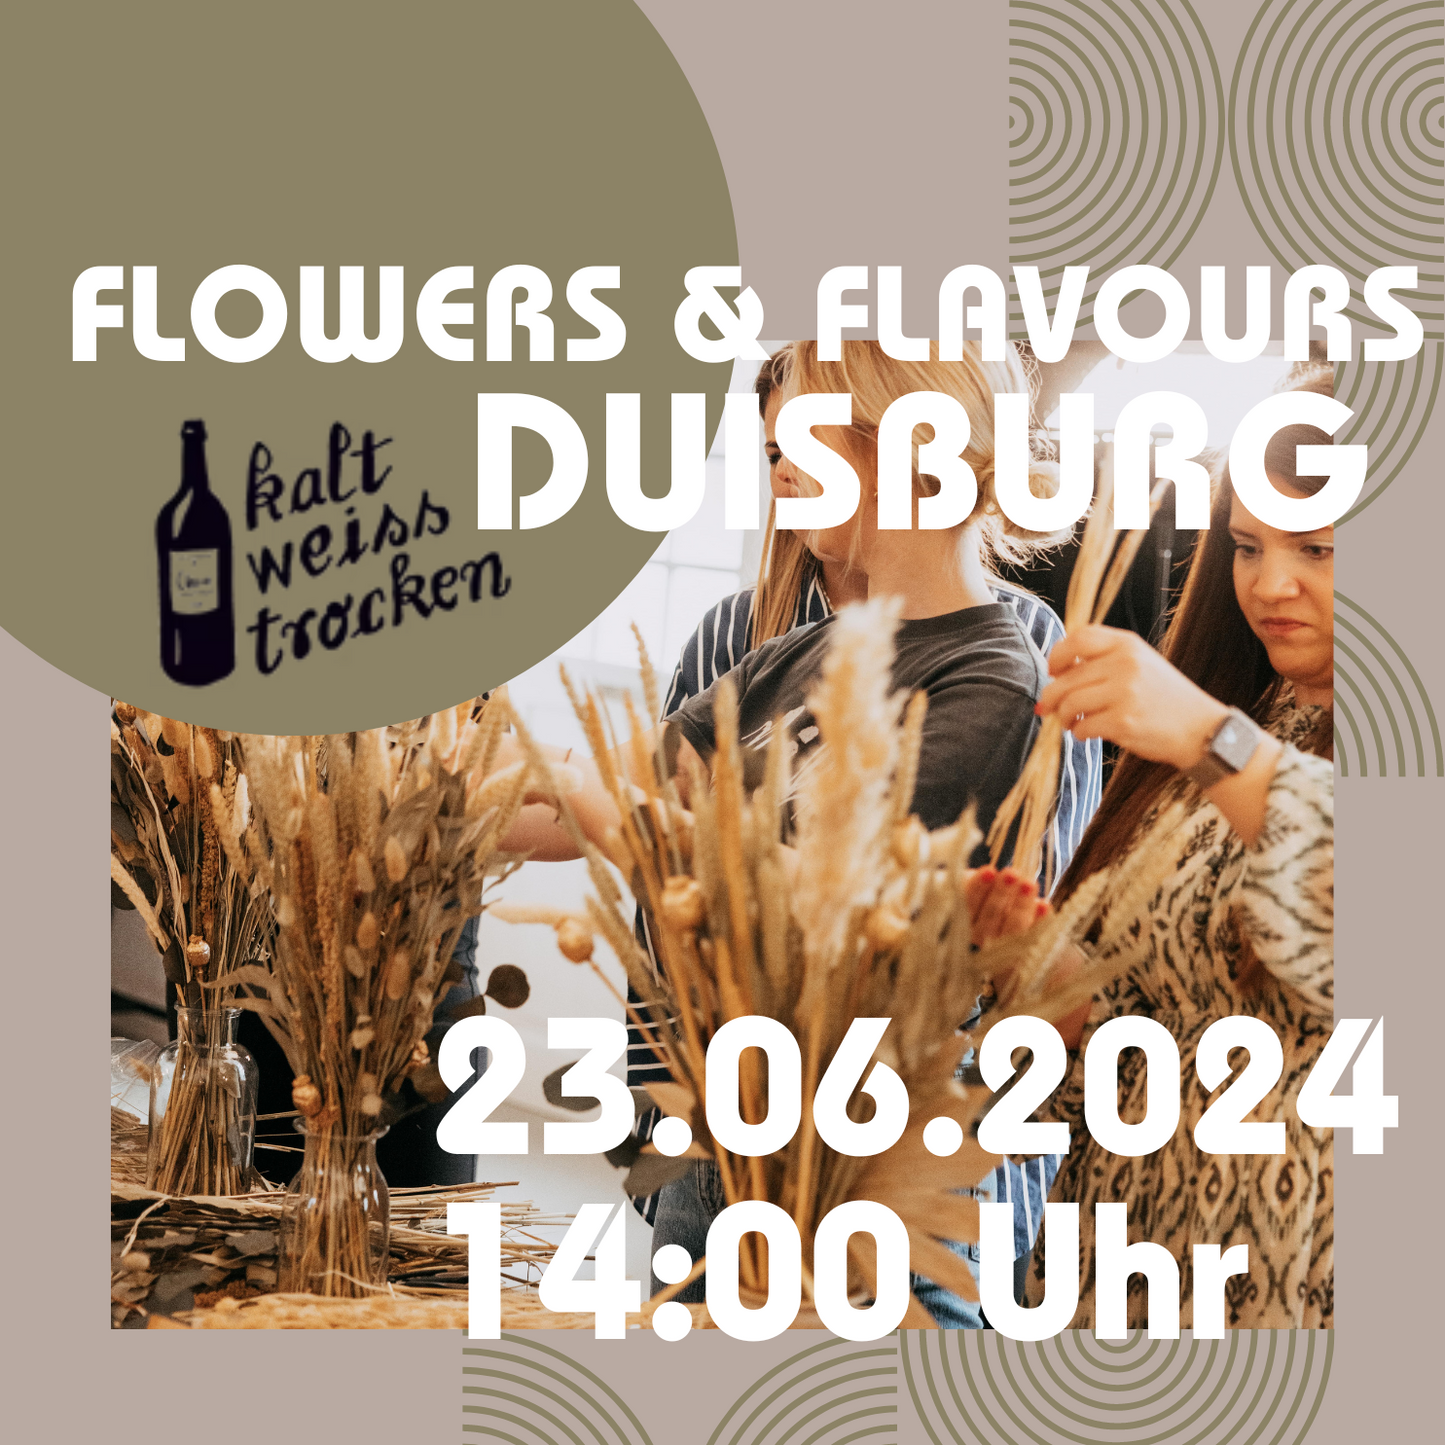 FLOWERS & FLAVOURS - Trockenblumenbouquet Workshop und Brunch kalt.weiss.trocken. Duisburg 23.06.2024 14 Uhr